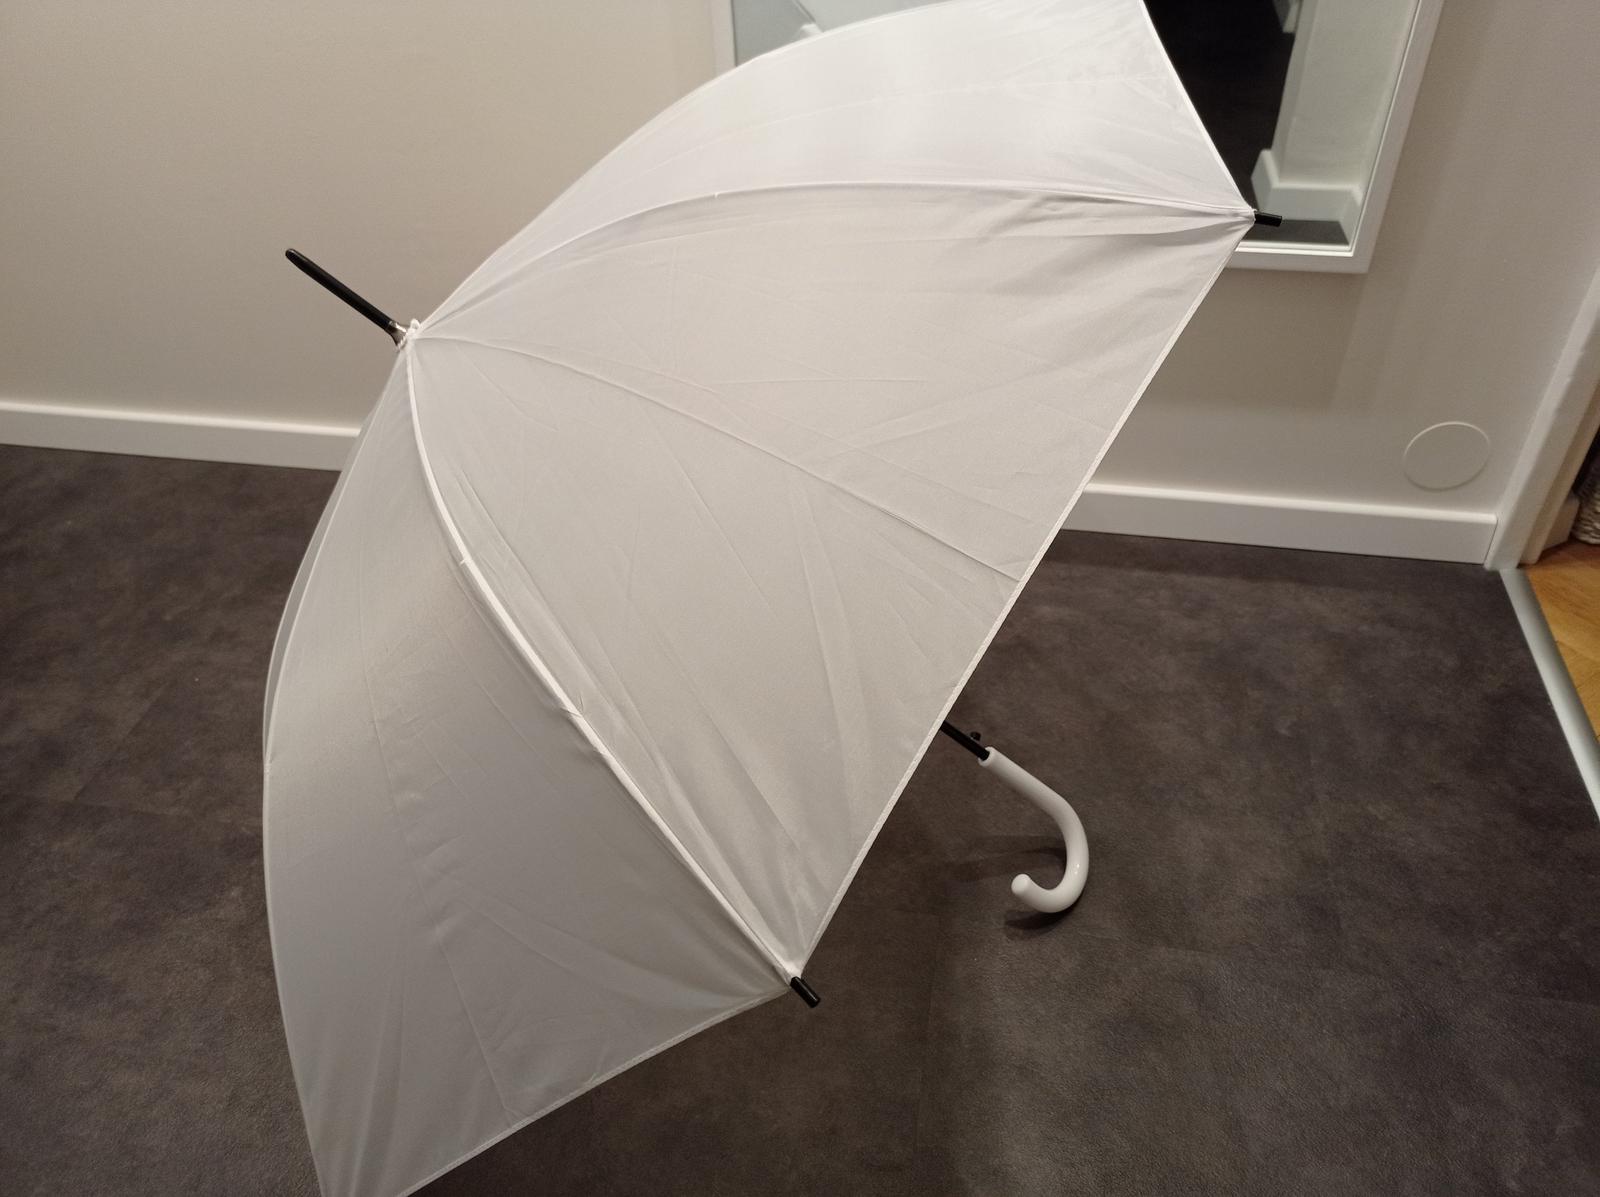 Svatební bílý deštník - Obrázek č. 1